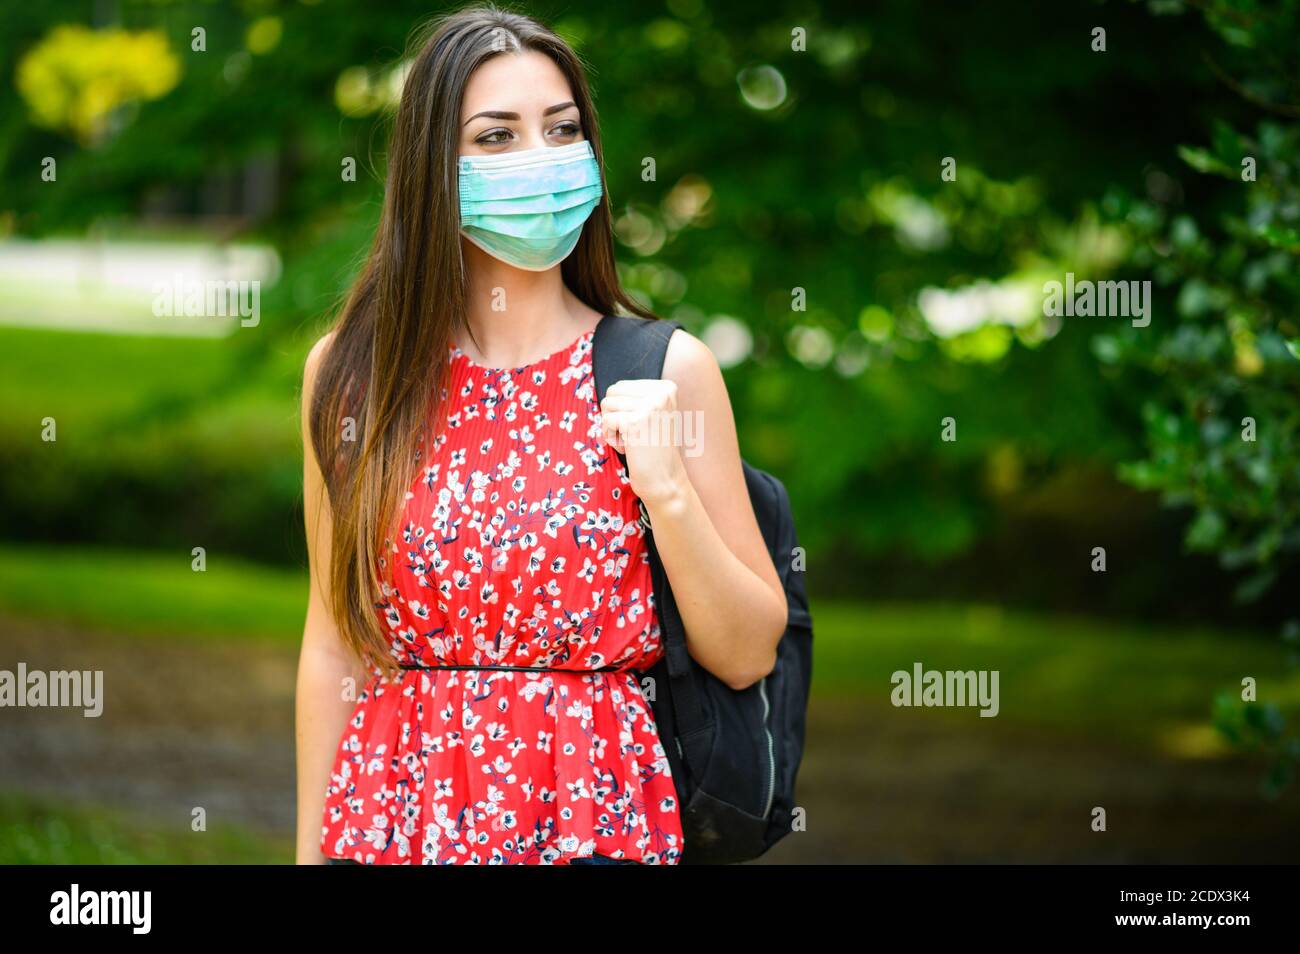 Estudiante que camina al aire libre en el parque y lleva una máscara para protegerse del coronavirus Foto de stock